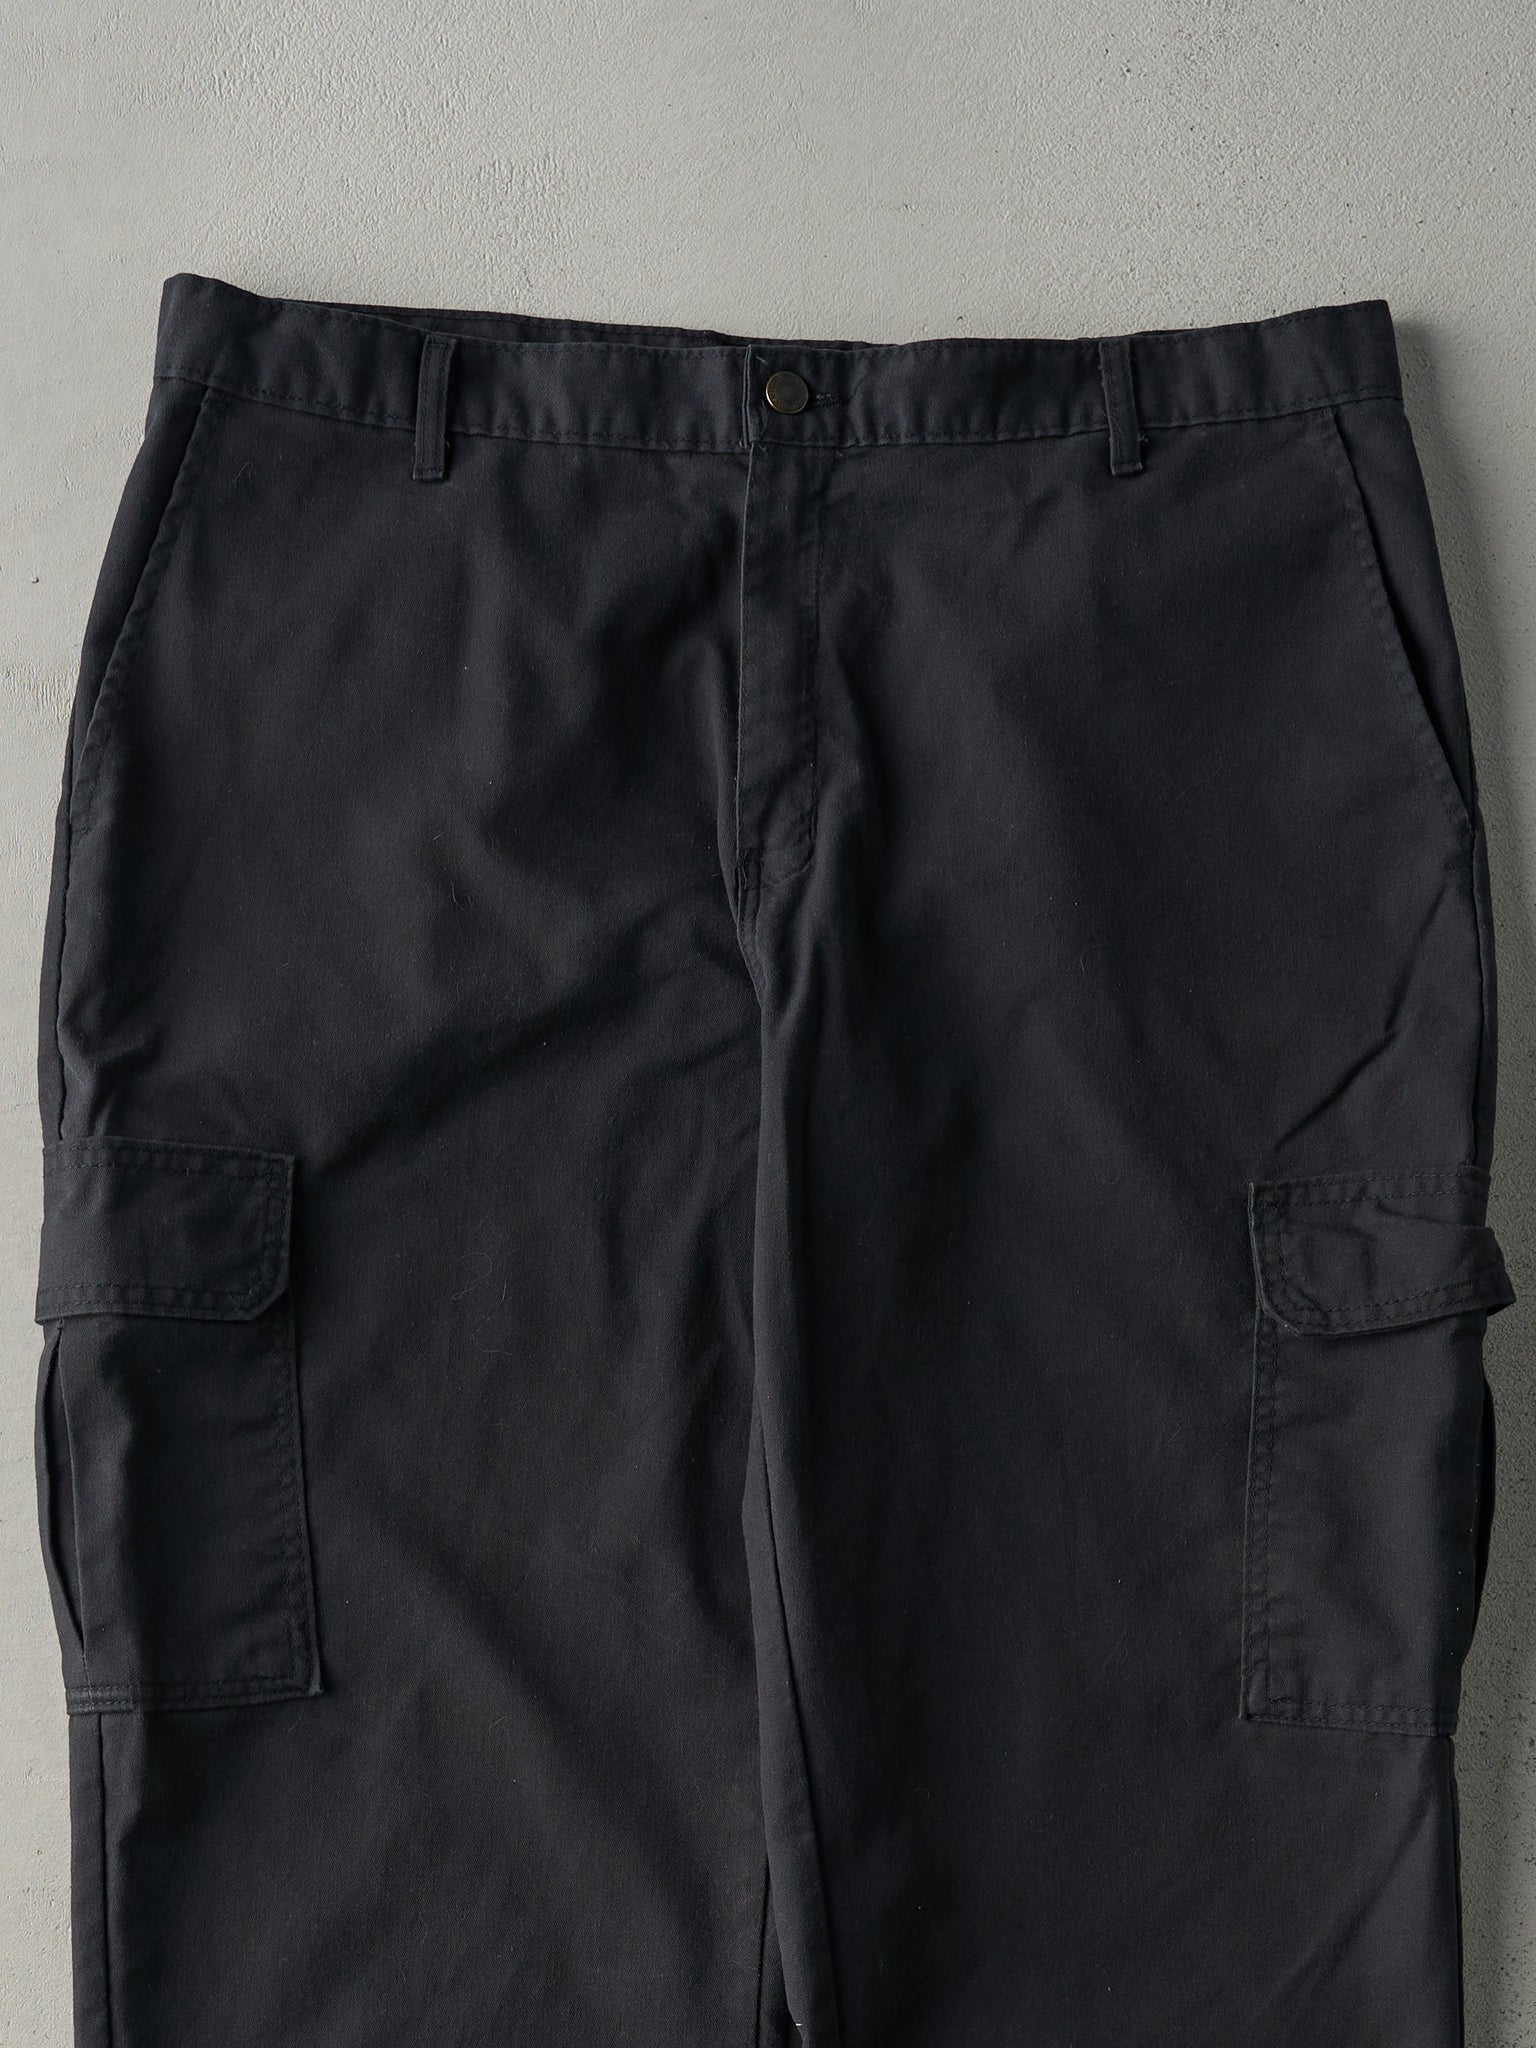 Vintage Y2K Faded Black Dickies Cargo Work Pants (37x29)